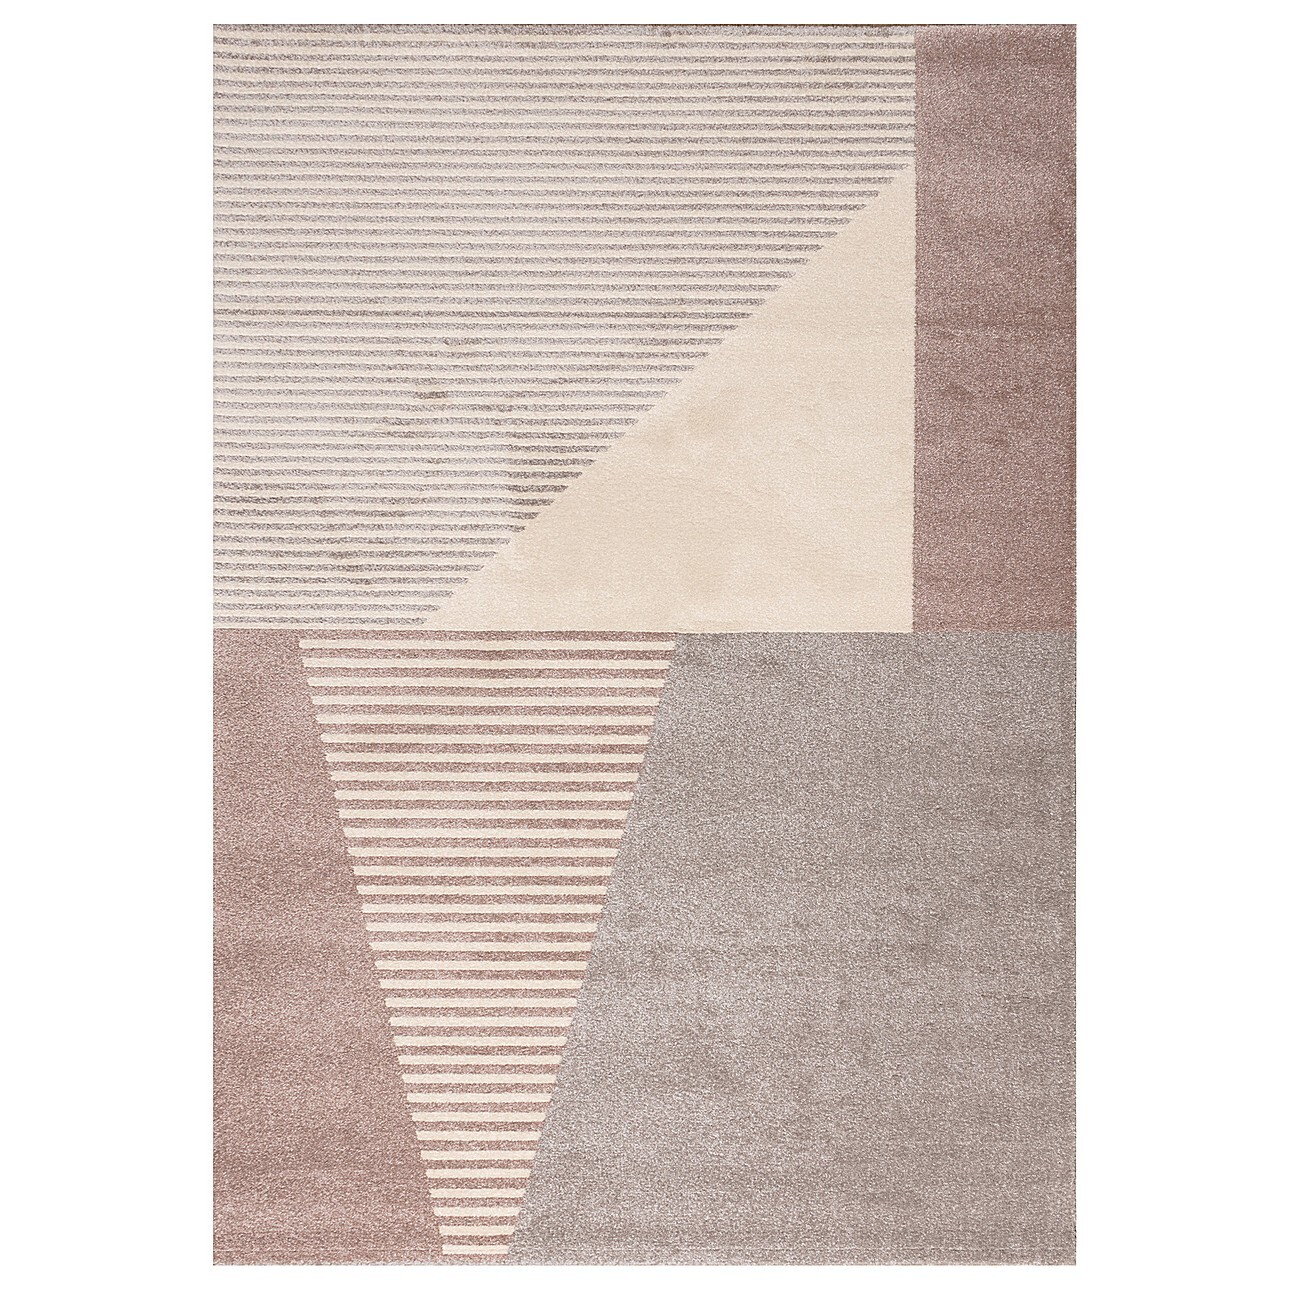 Teppich Sevilla paper white/dusty rose 160x230cm, 160x230cm günstig online kaufen